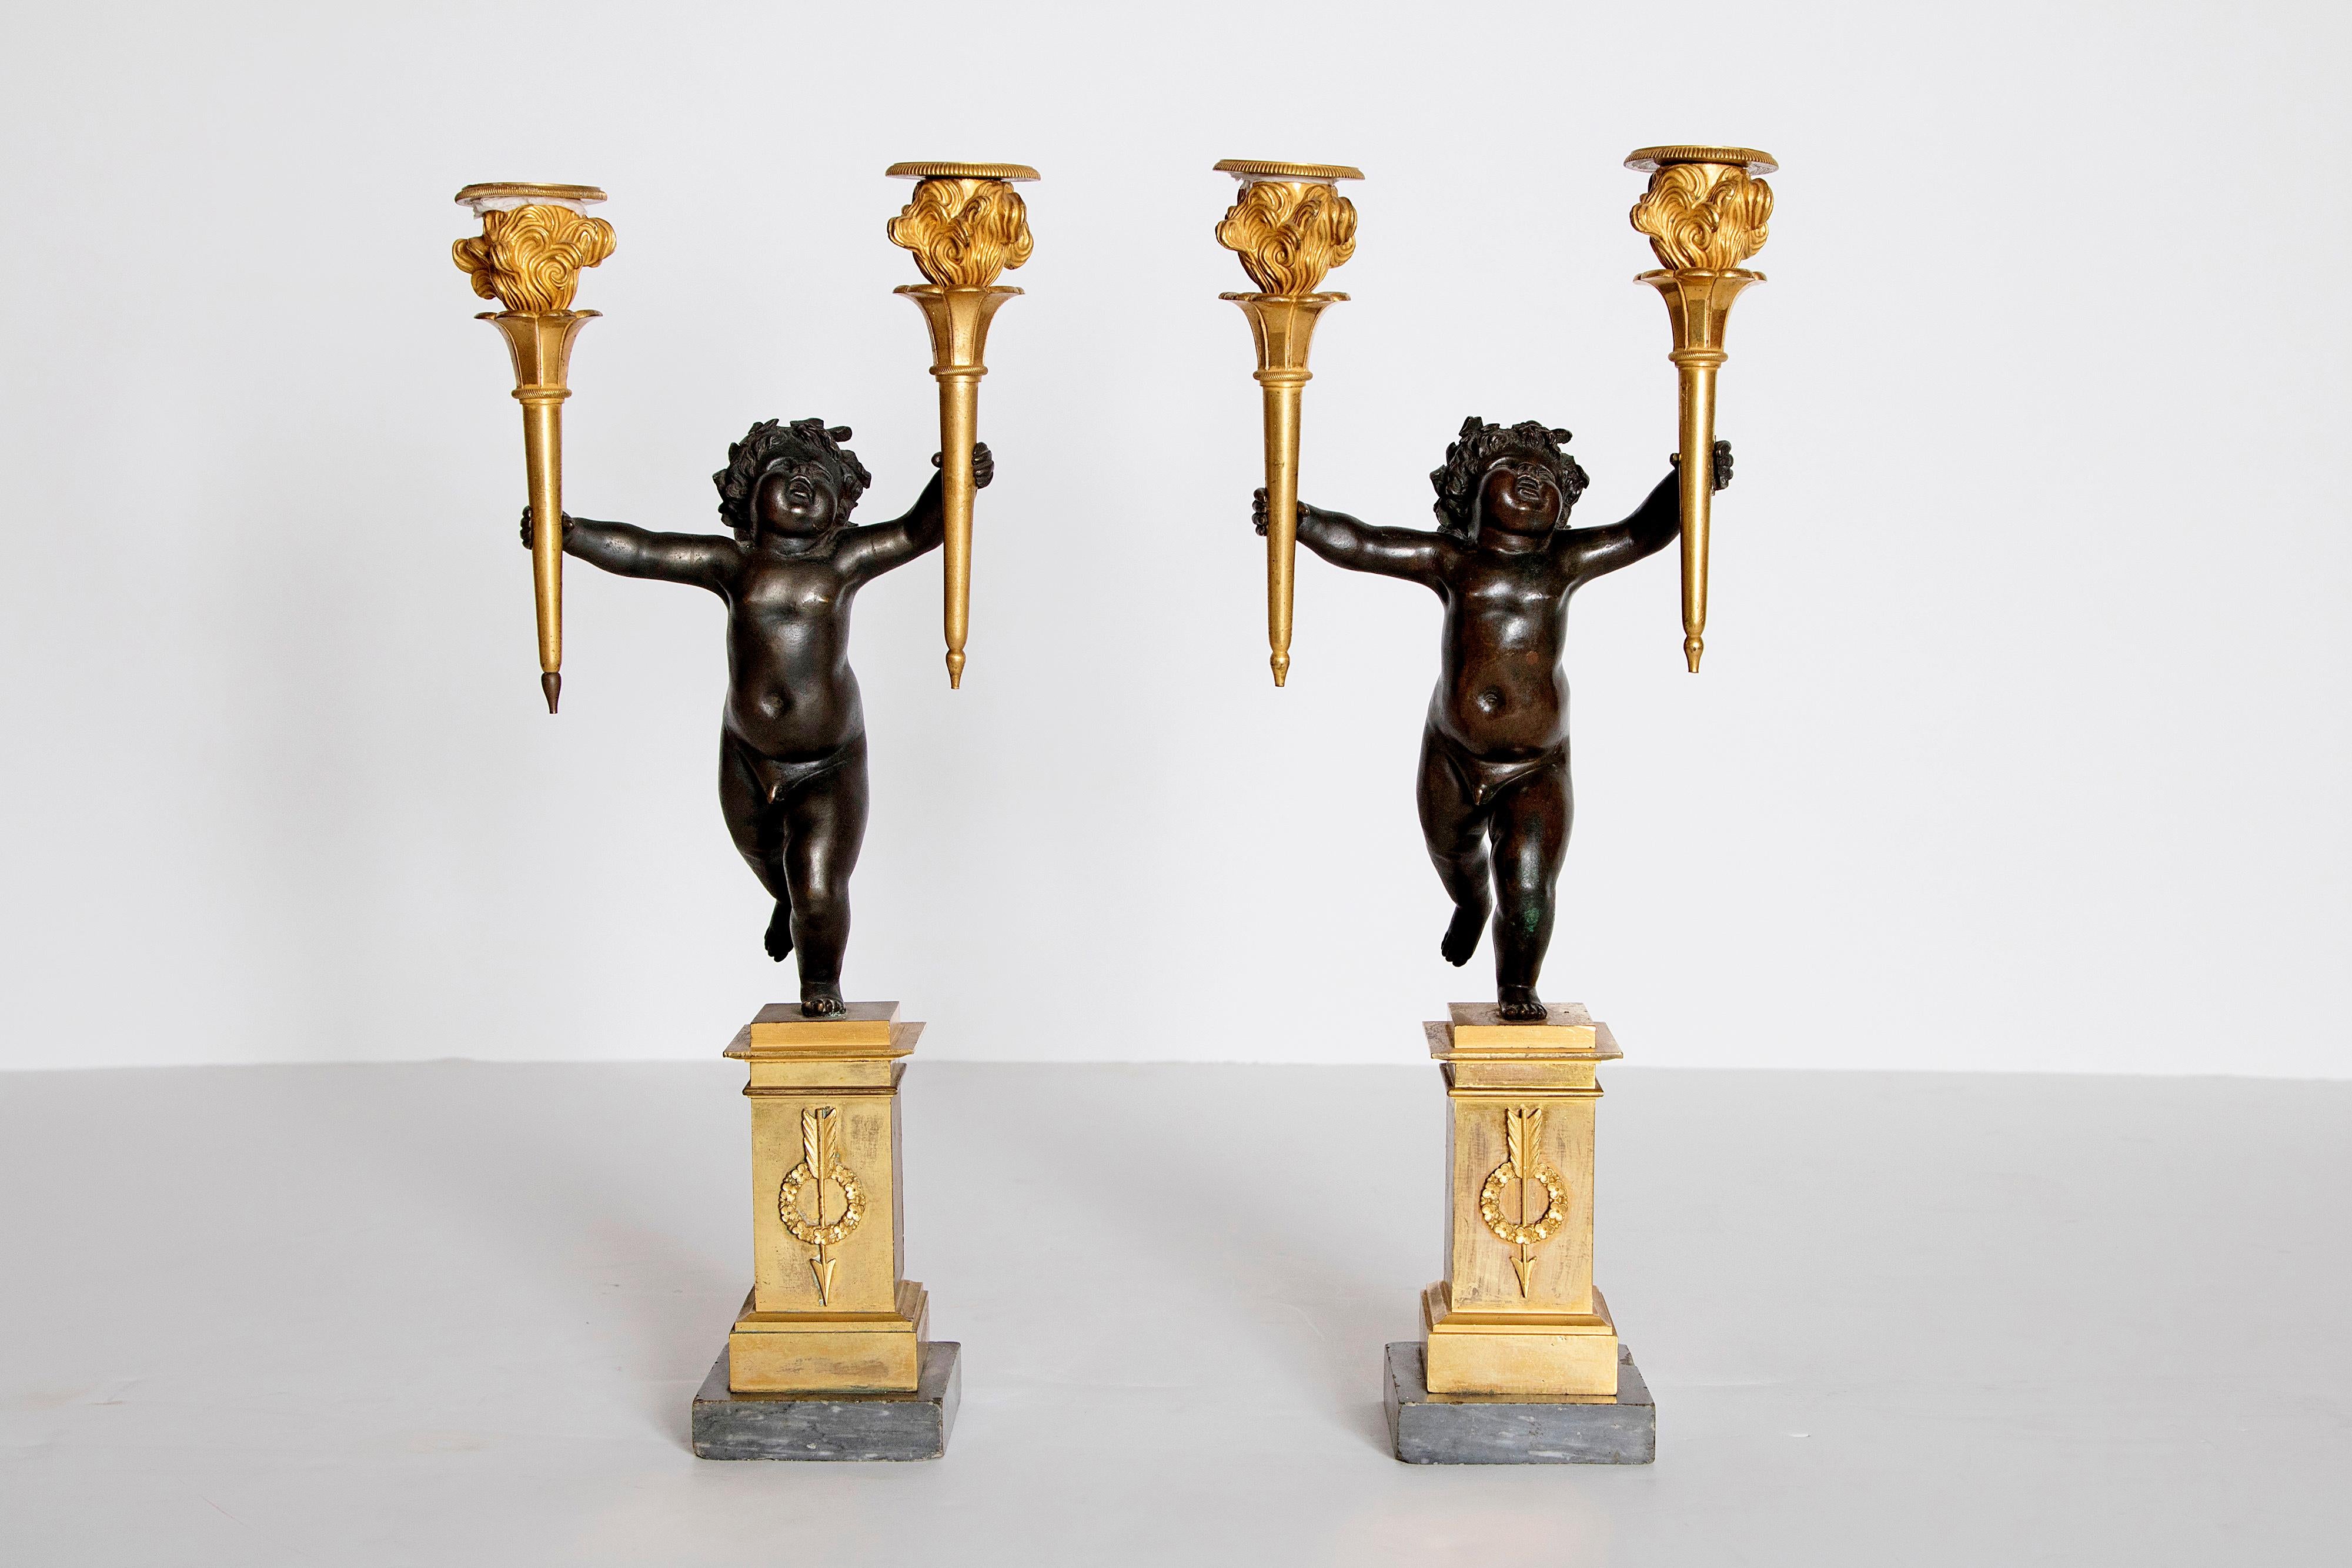 Une belle paire de candélabres figuratifs en forme de chérubin en bronze patiné courant avec une torchère dorée dans chaque main. Les chérubins reposent sur un piédestal carré doré avec une couronne dorée appliquée avec une flèche. Les chérubins se